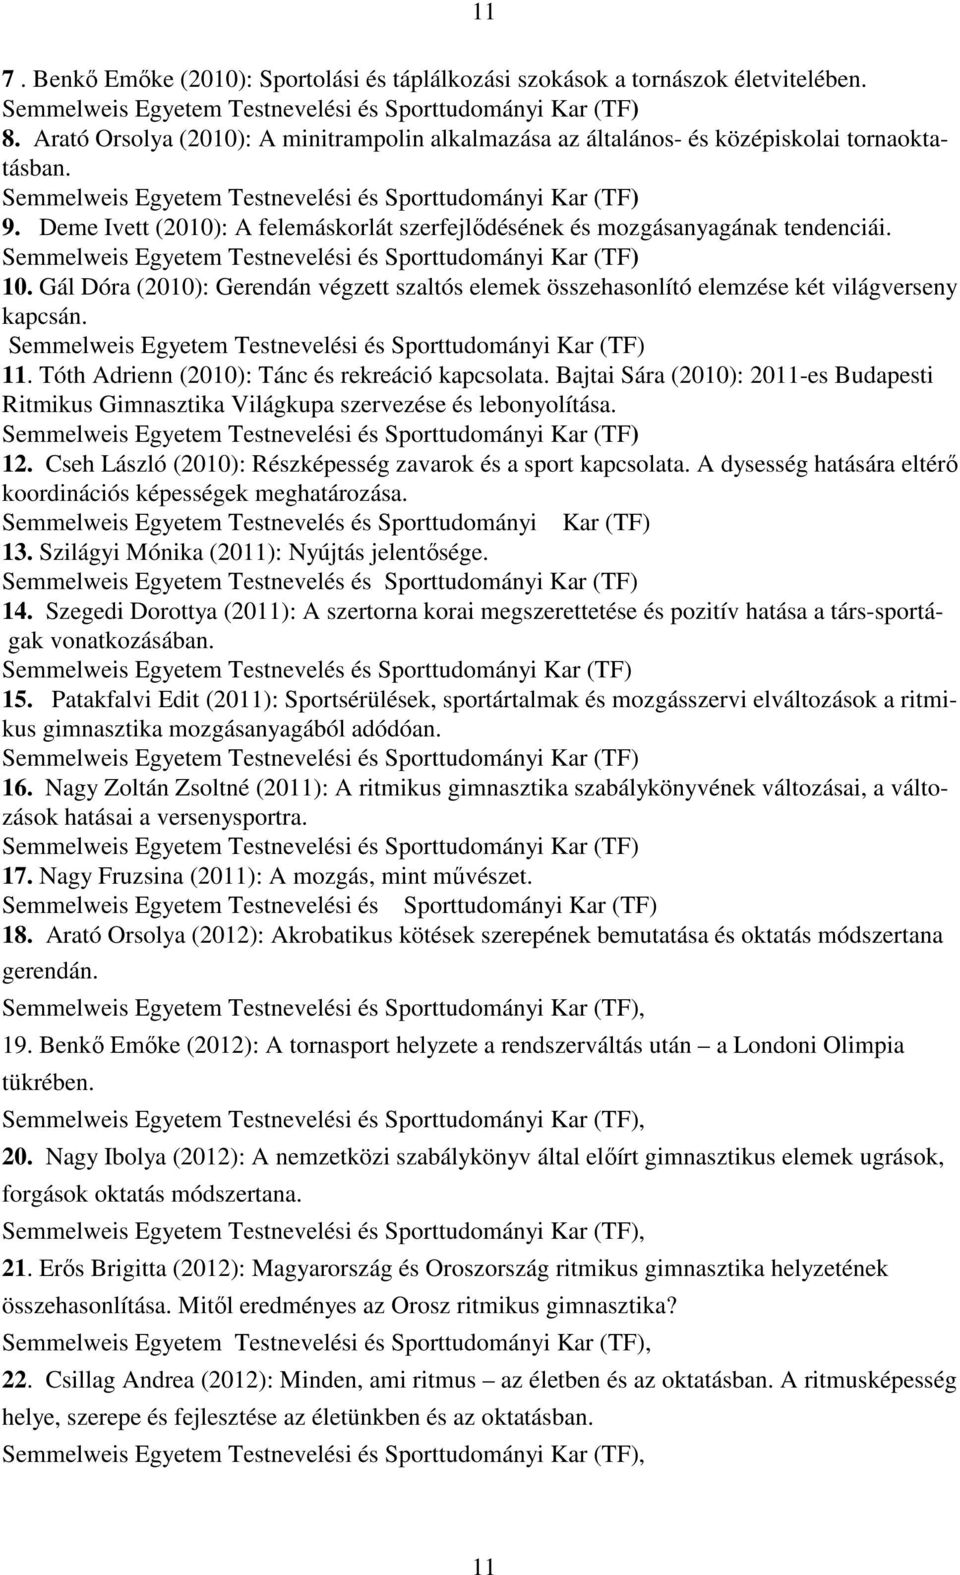 Tóth Adrienn (2010): Tánc és rekreáció kapcsolata. Bajtai Sára (2010): 2011-es Budapesti Ritmikus Gimnasztika Világkupa szervezése és lebonyolítása. 12.